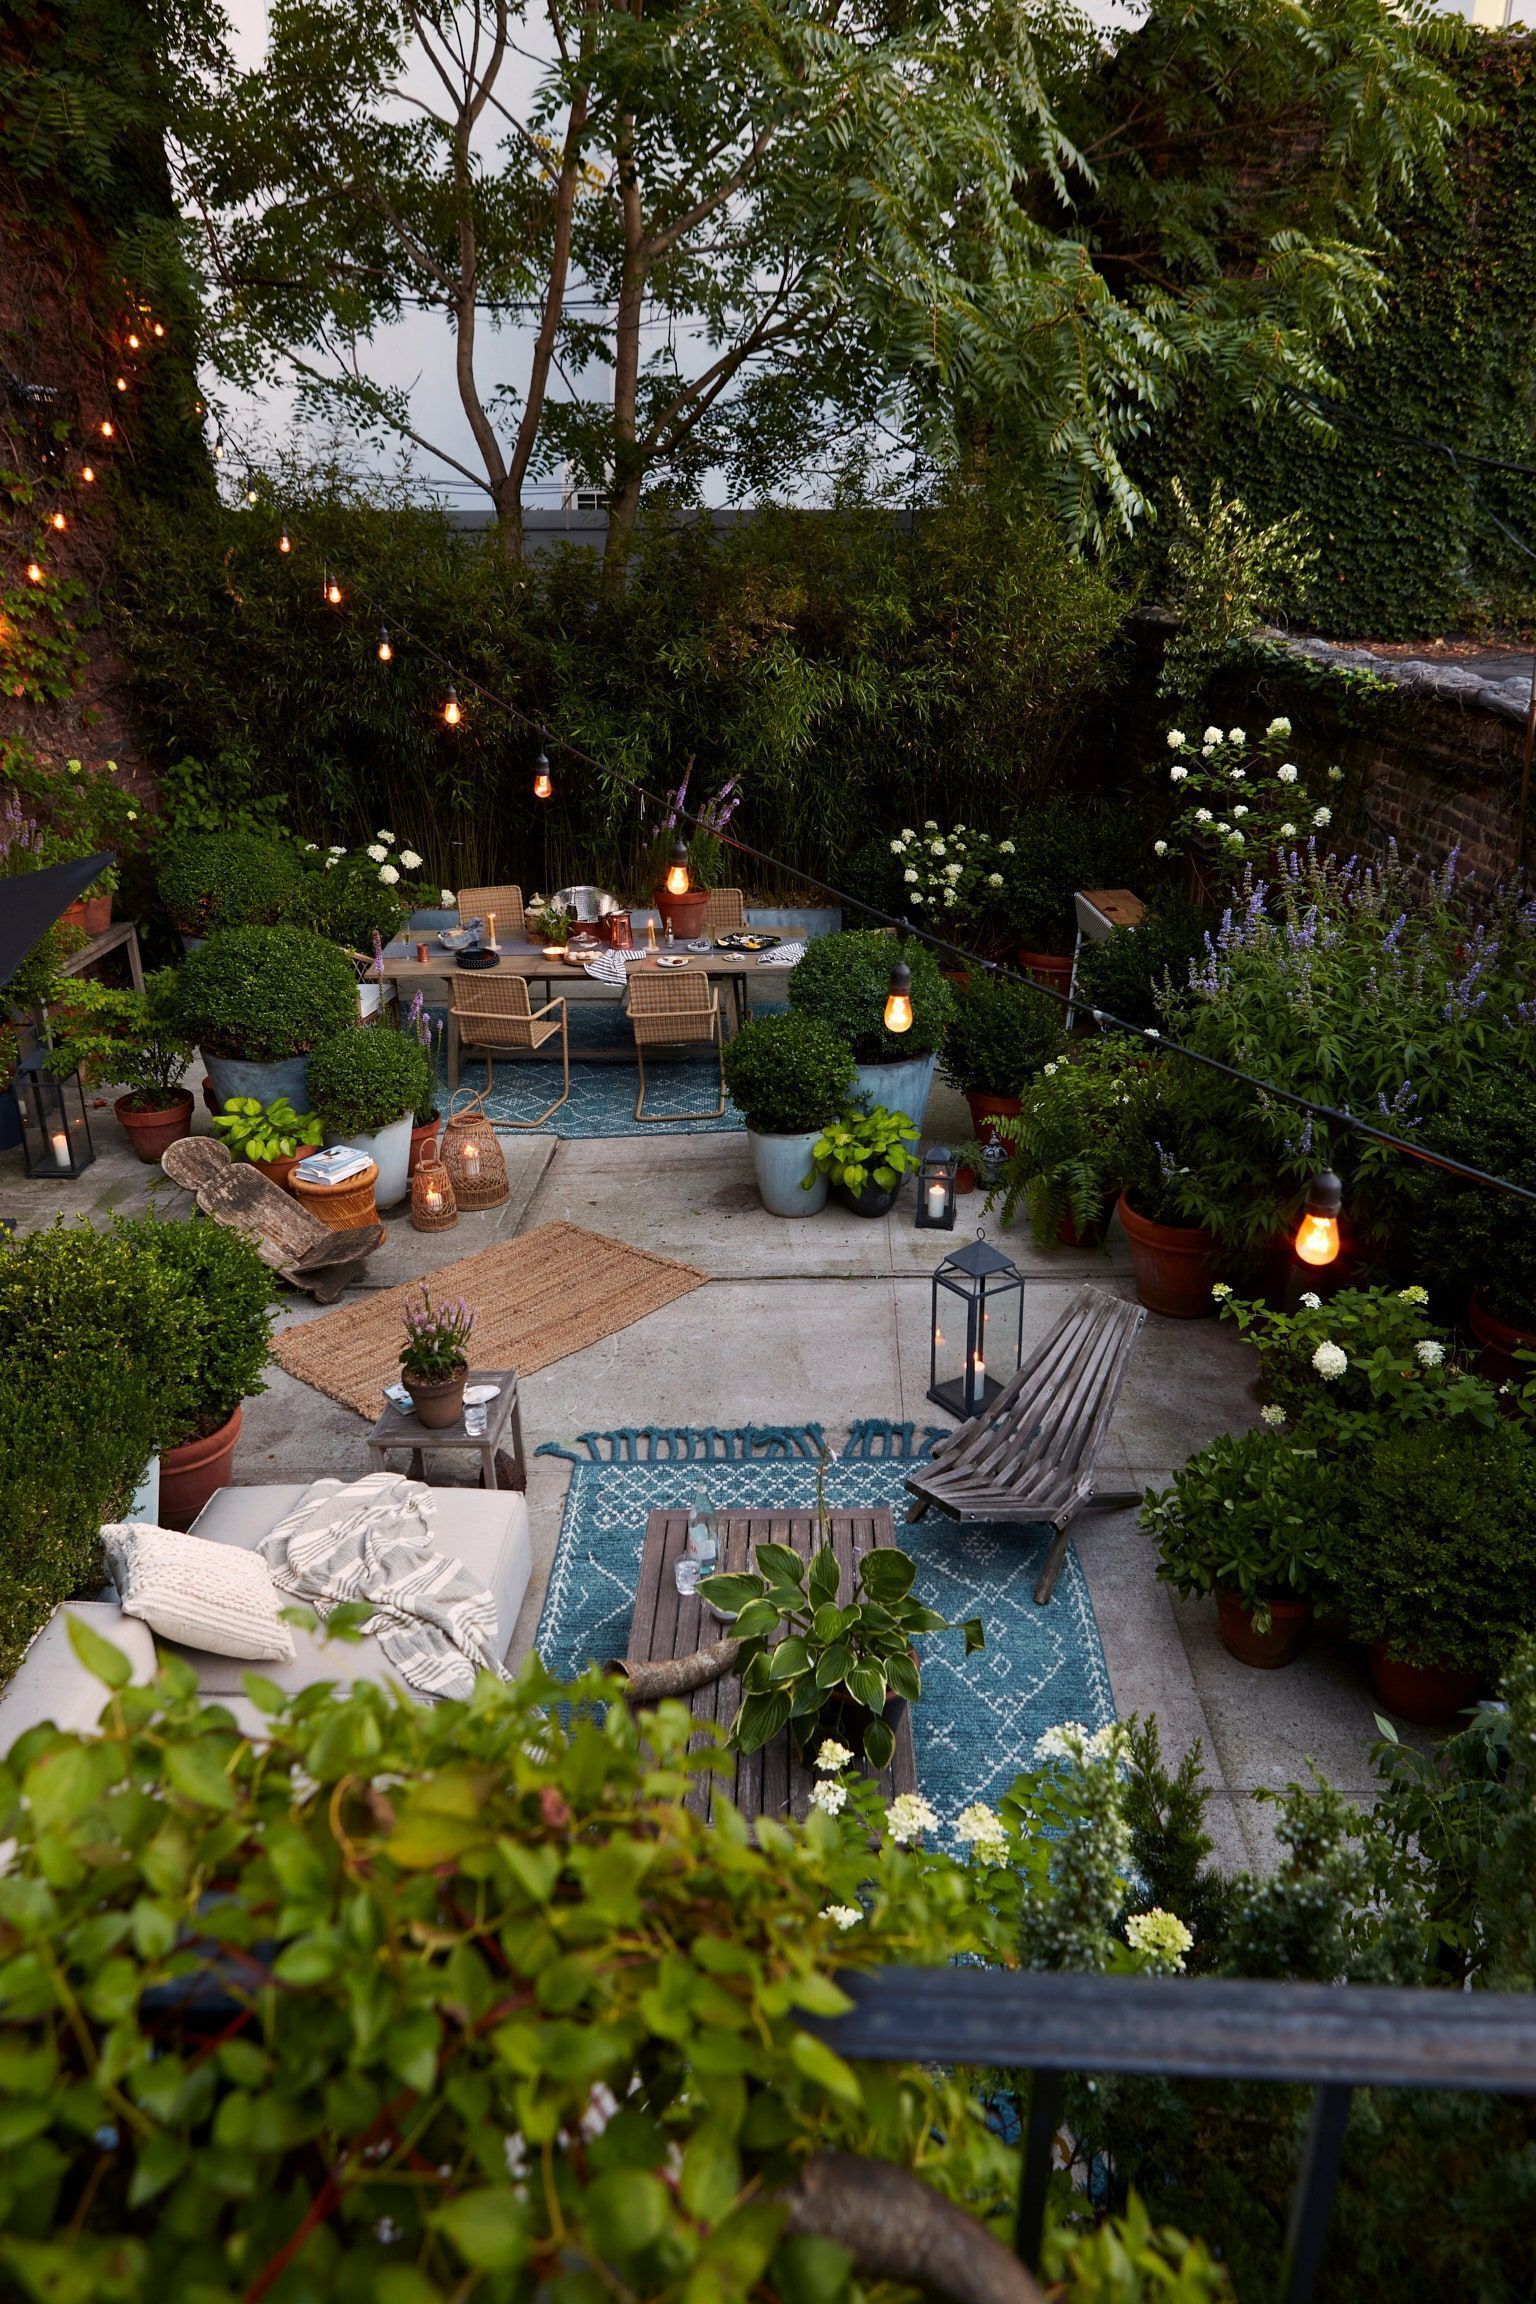 Creating a Cozy Urban Oasis with a Charming Patio Garden